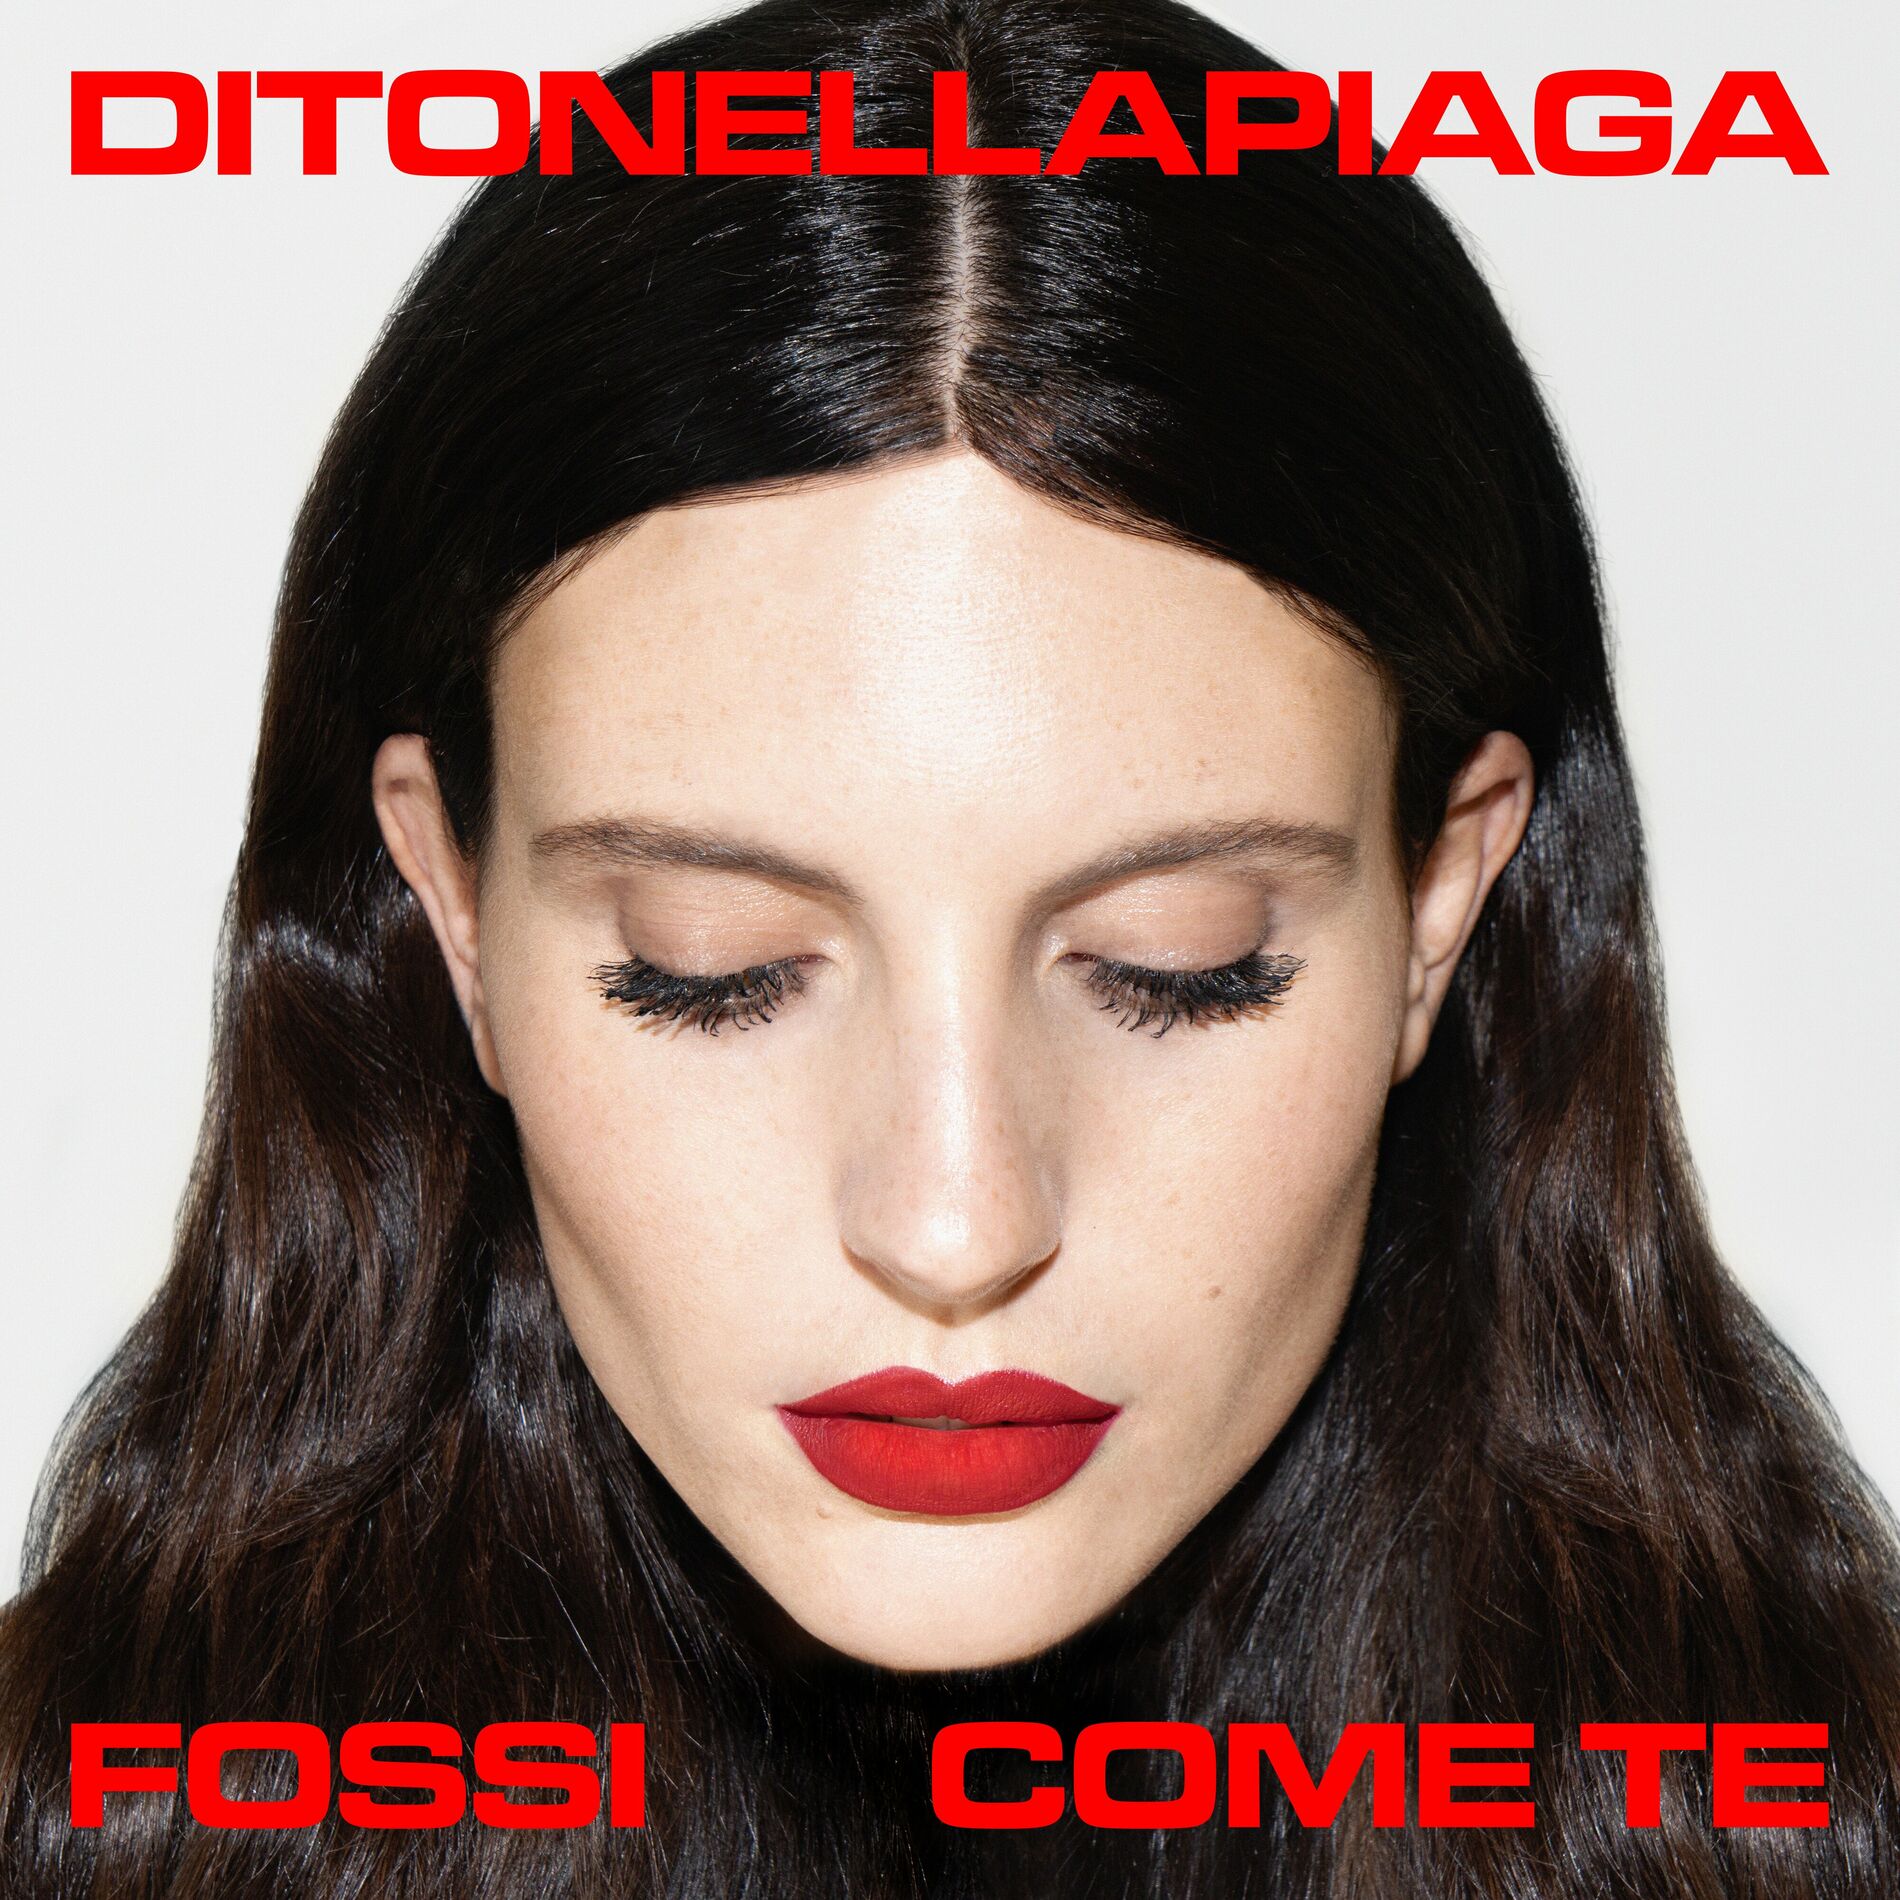 Ditonellapiaga — Fossi come te cover artwork